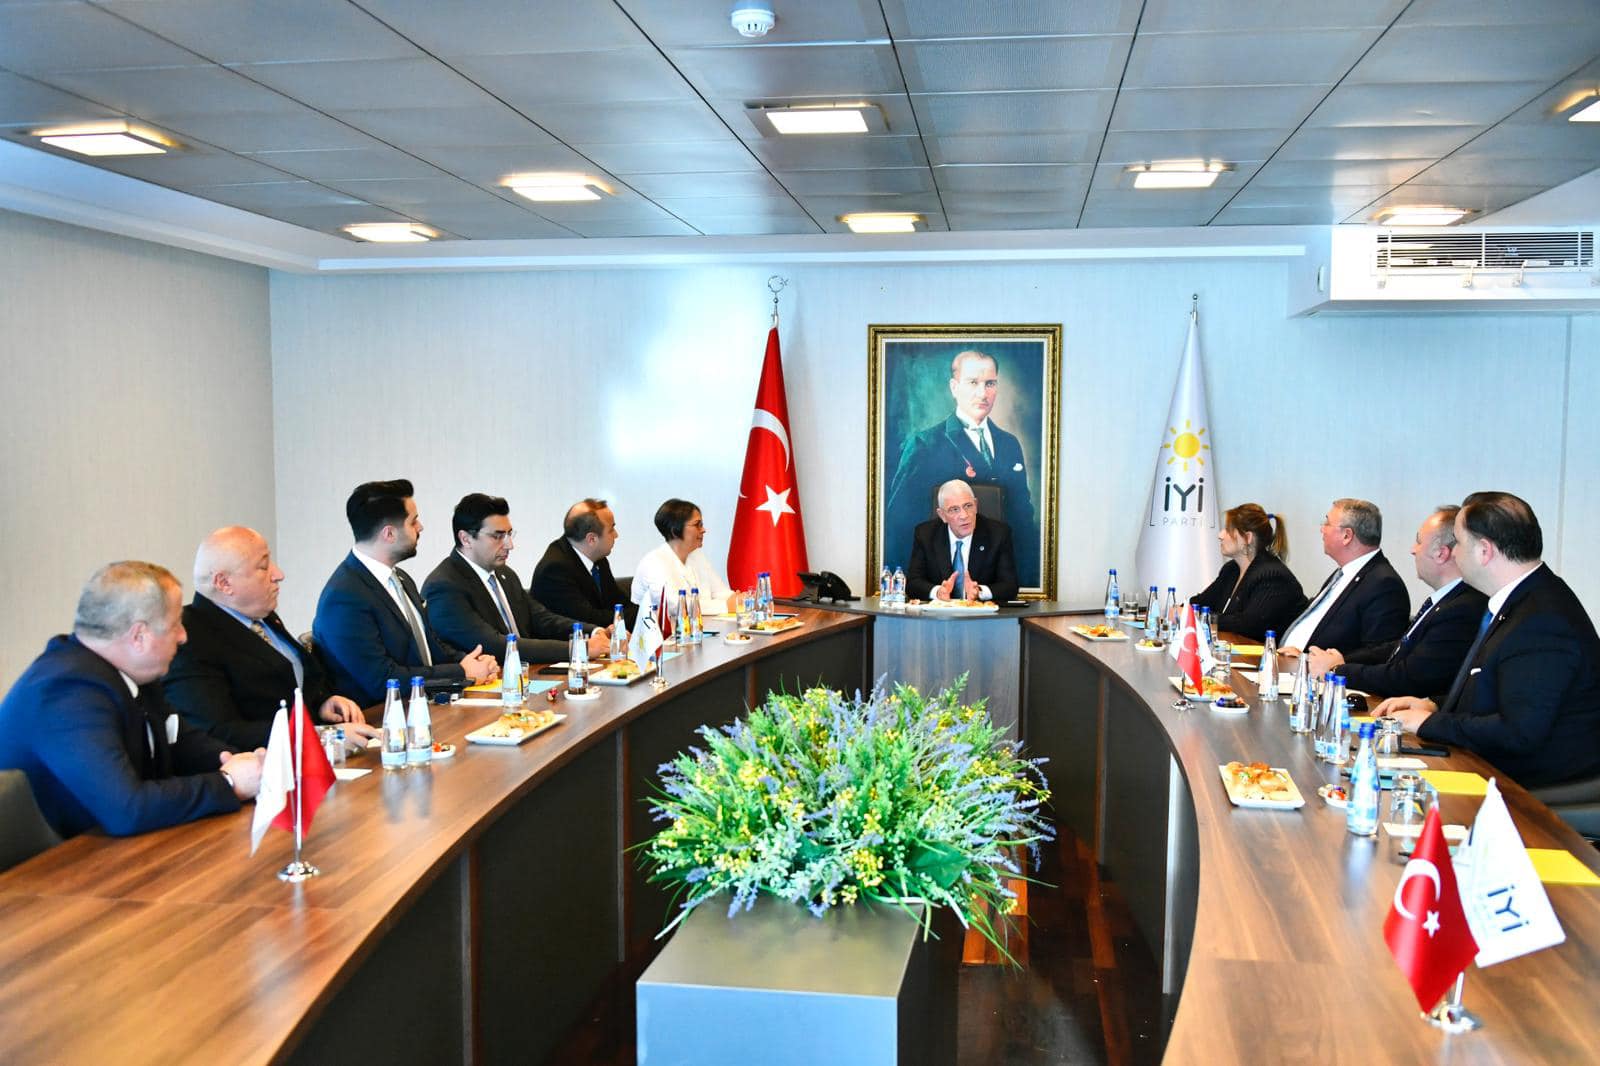 İYİ Parti'de Merkez Disiplin Kurulu Başkanlığı'na Atama